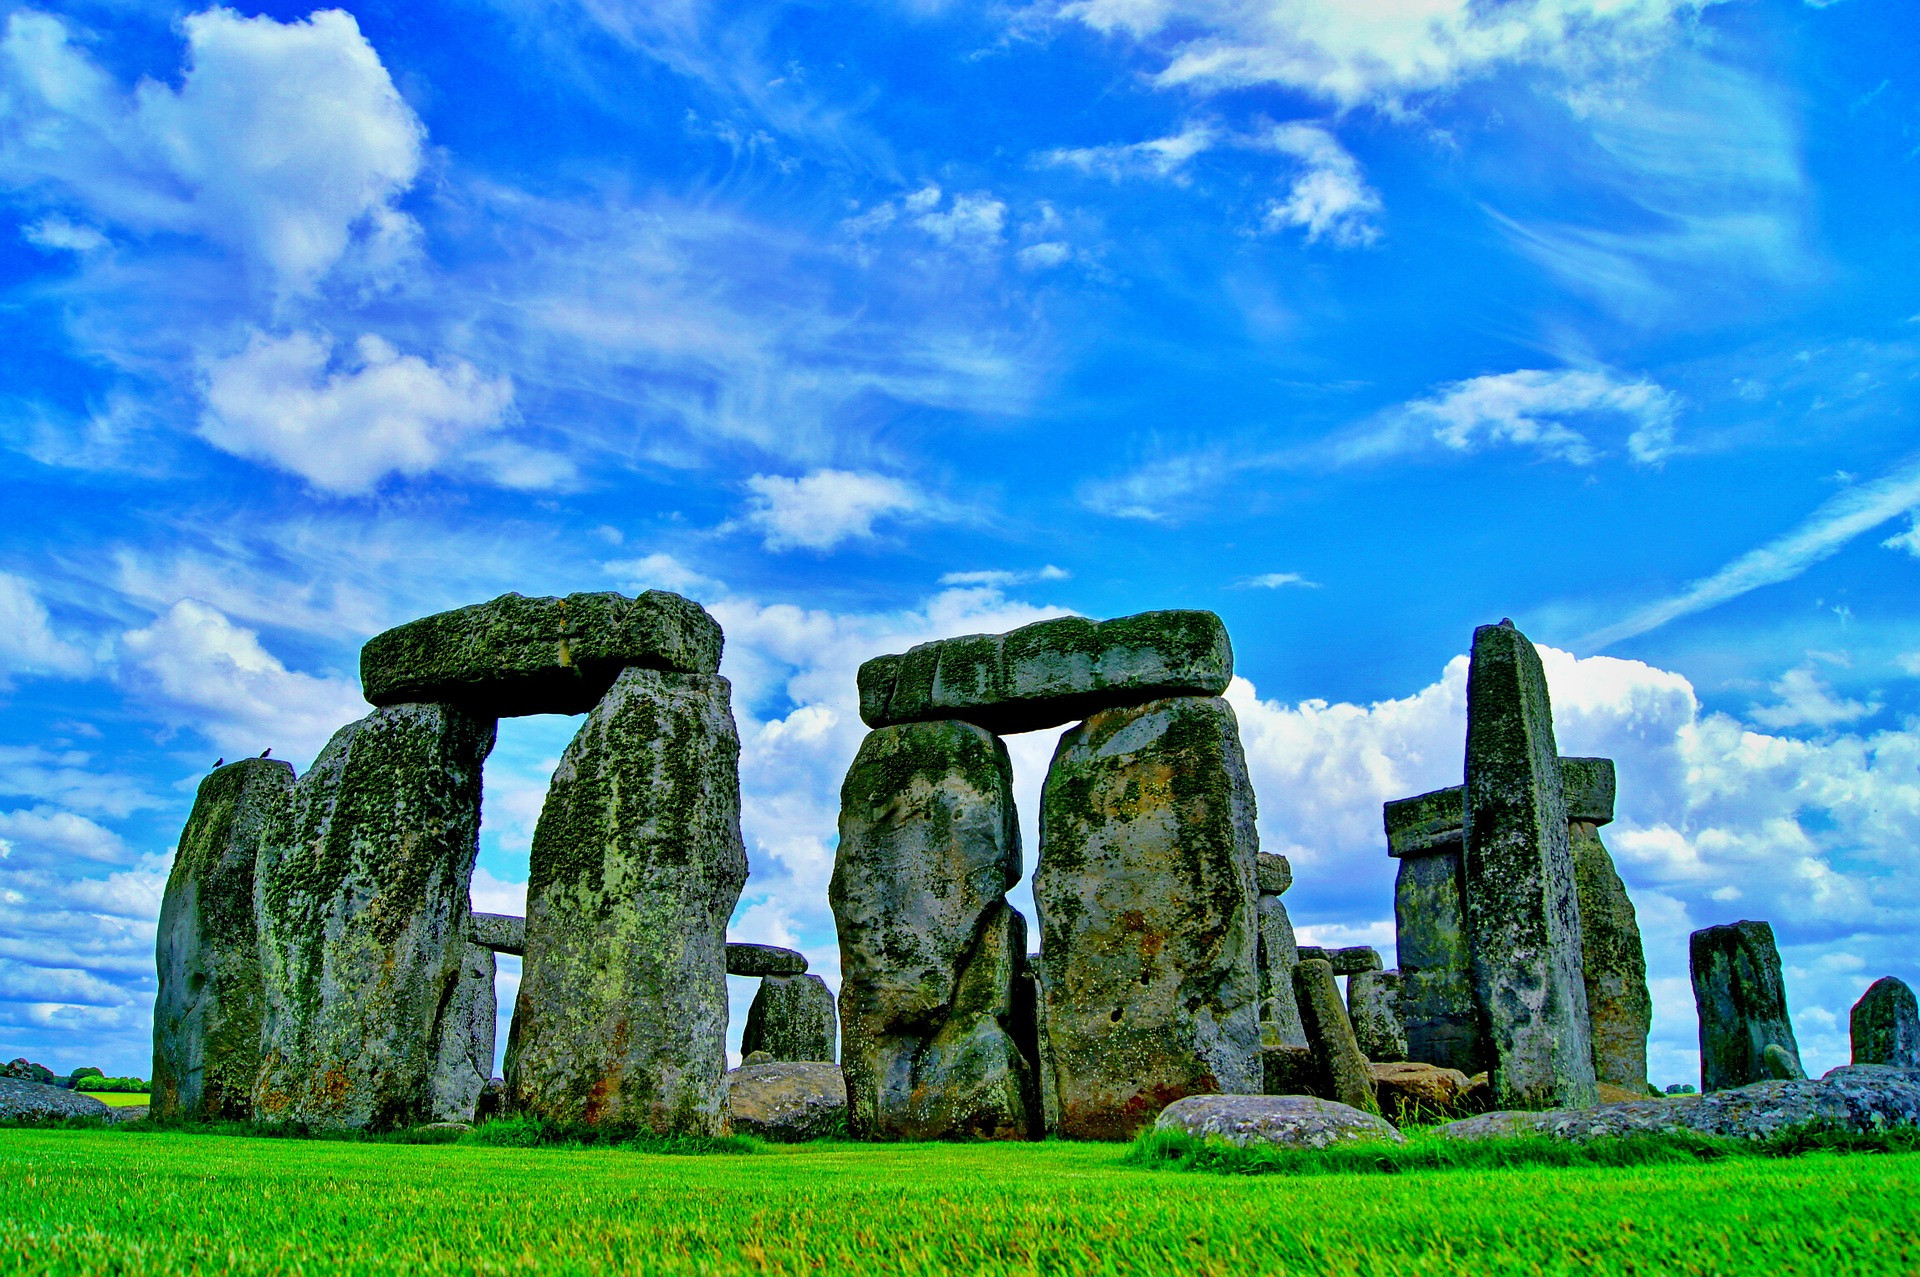 Podľa legendy bol kamenný komplex postavený kúzelníkom Merlinom. V skutočnosti však Stonehenge objavili dávno pred legendárnym spoločníkom kráľa Artuša. Ale ako ľudia prepravili tieto neskutočne ťažké balvany z lomu, ktorý sa našiel stovky kilometrov ďaleko? Účel stavby nie je celkom jasný. Či už to bolo observatórium alebo útočisko, sa možno nikdy nedozvieme.